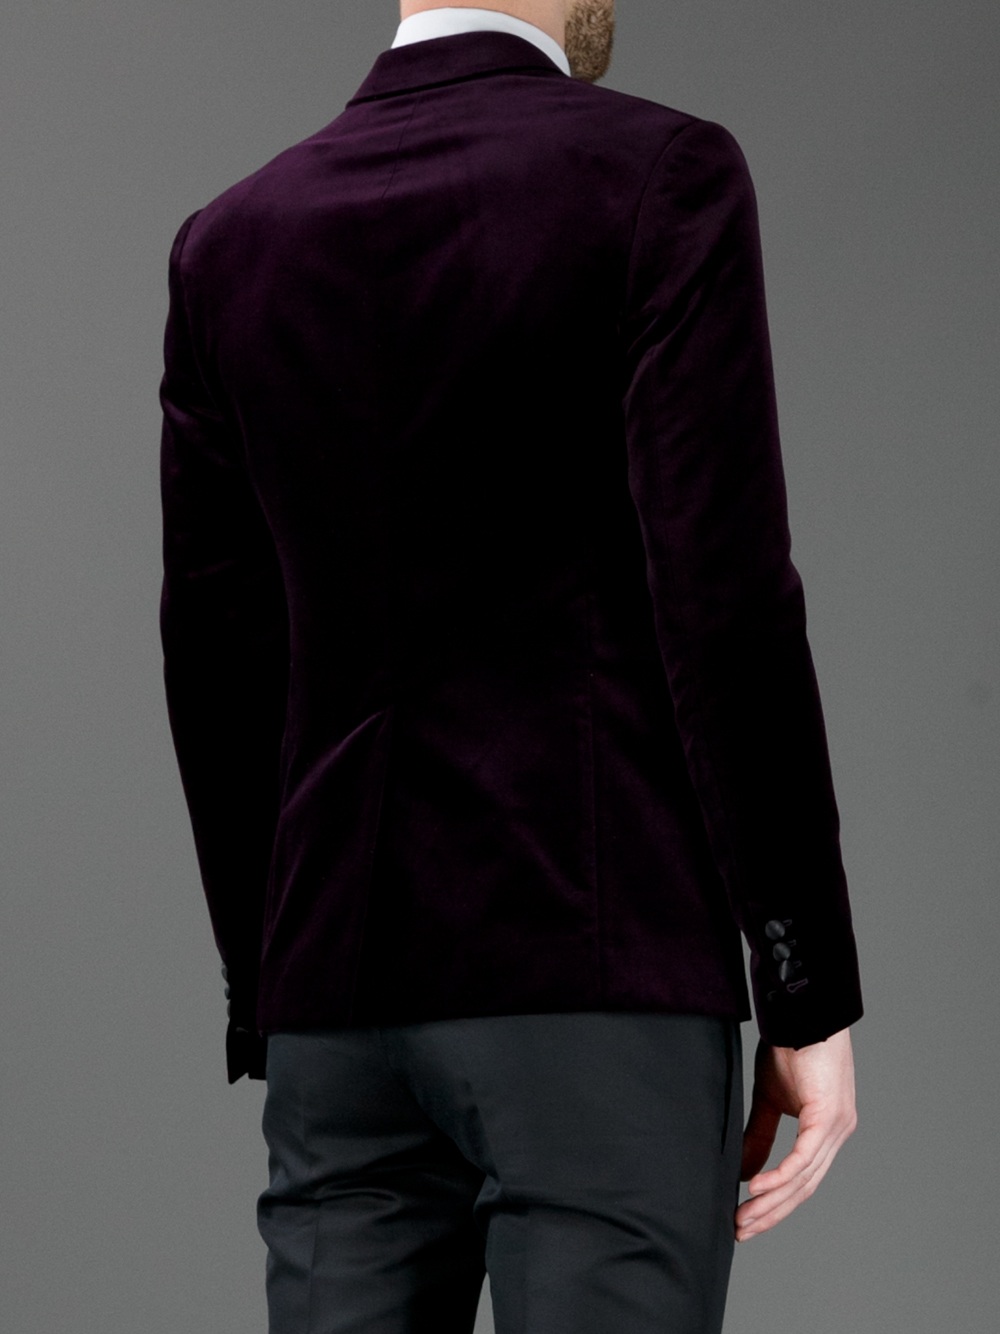 Lyst - Dsquared² Velvet Evening Jacket in Purple for Men